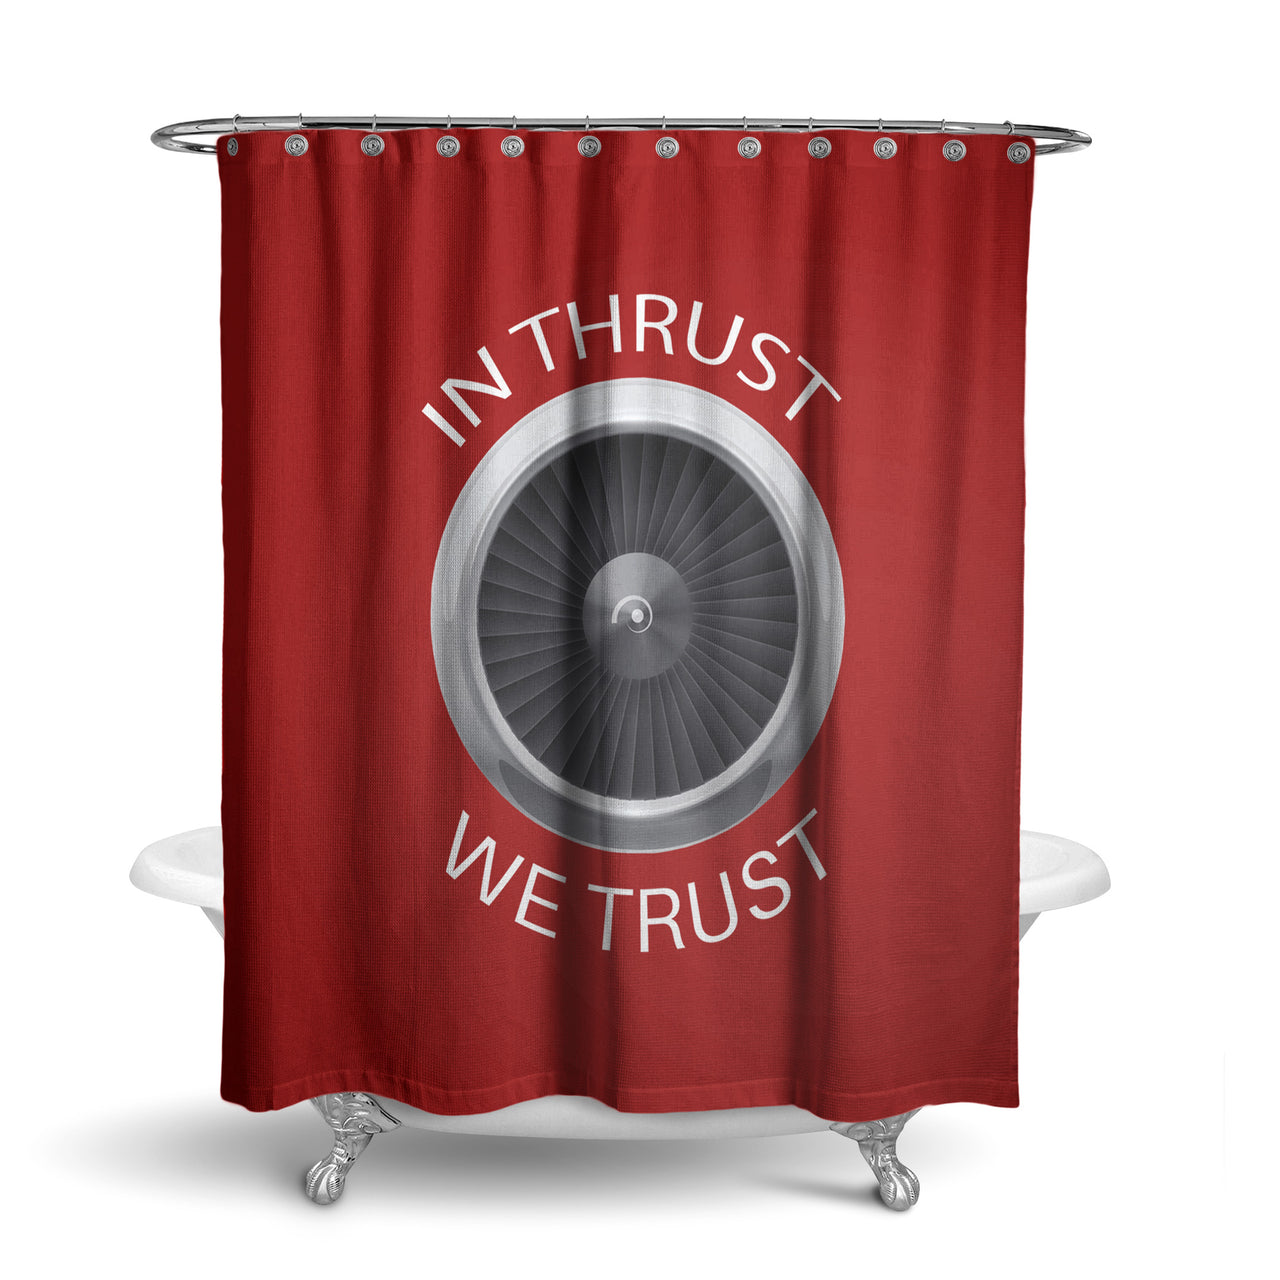 In Thrust We Trust Designed Shower Curtains